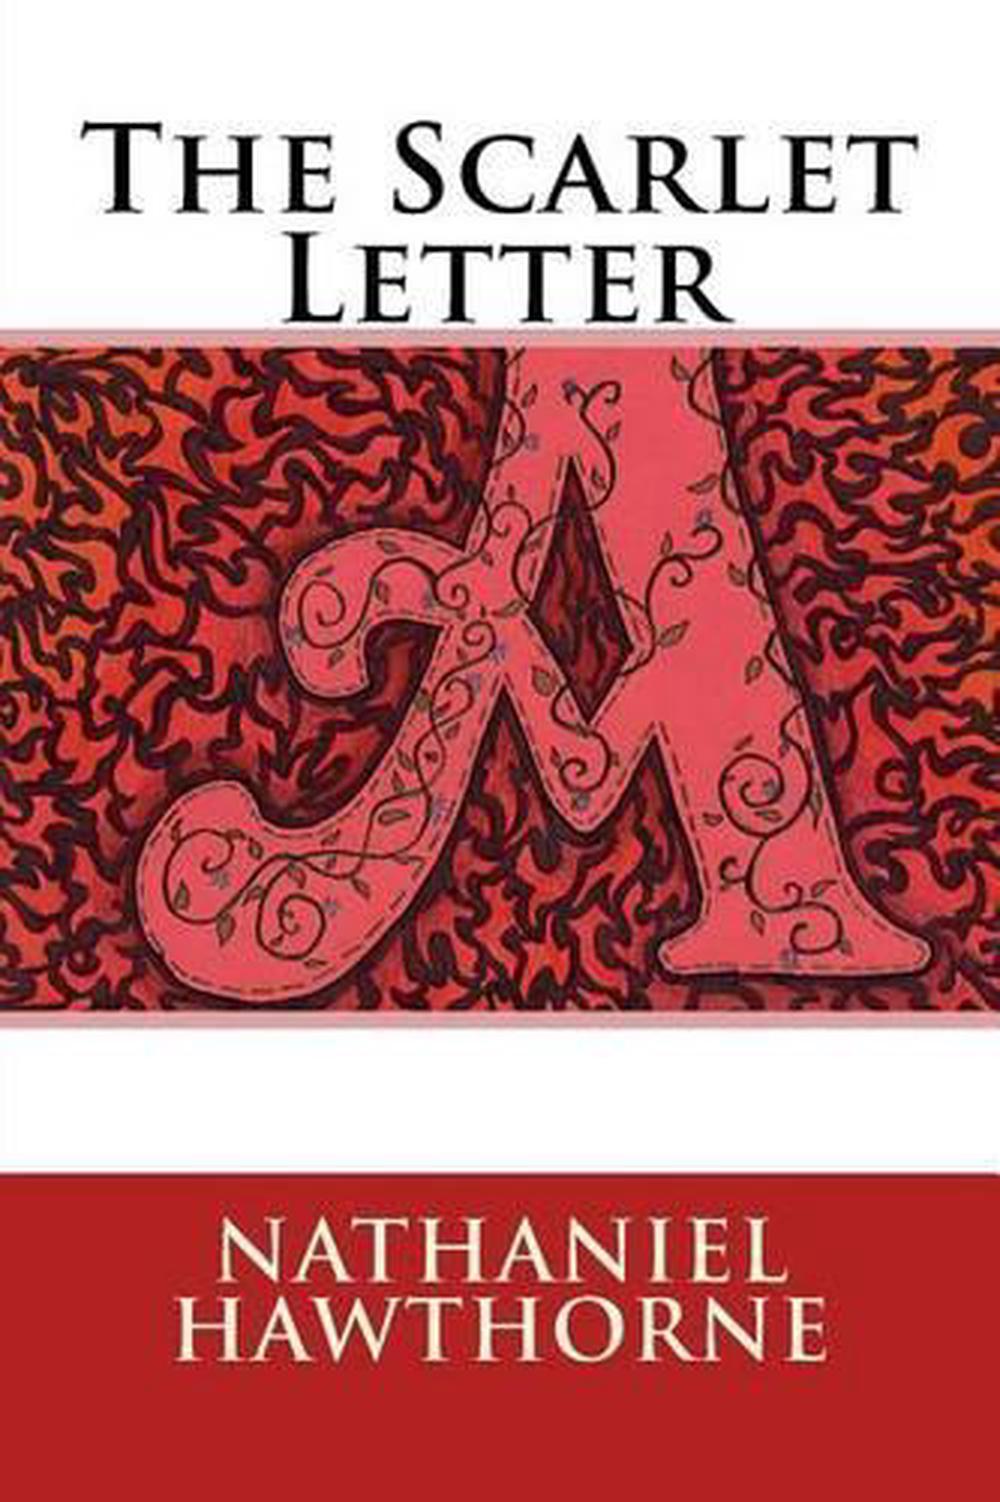 nathaniel hawthorne novel the scarlet letter